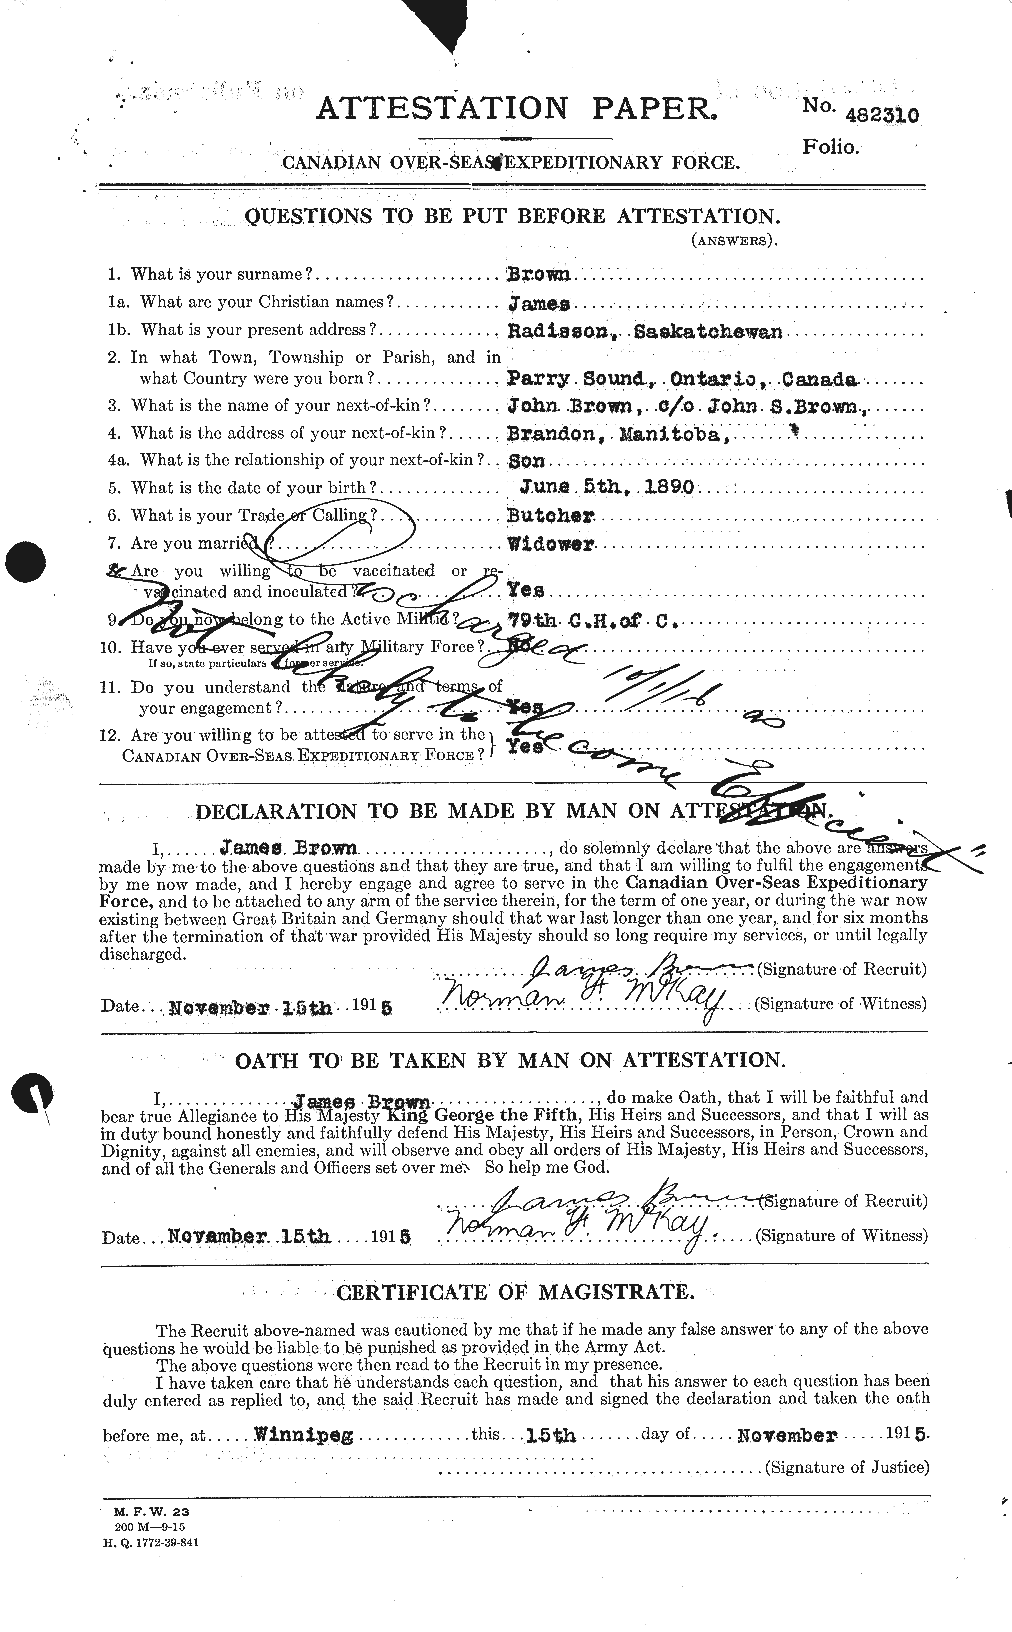 Dossiers du Personnel de la Première Guerre mondiale - CEC 265764a